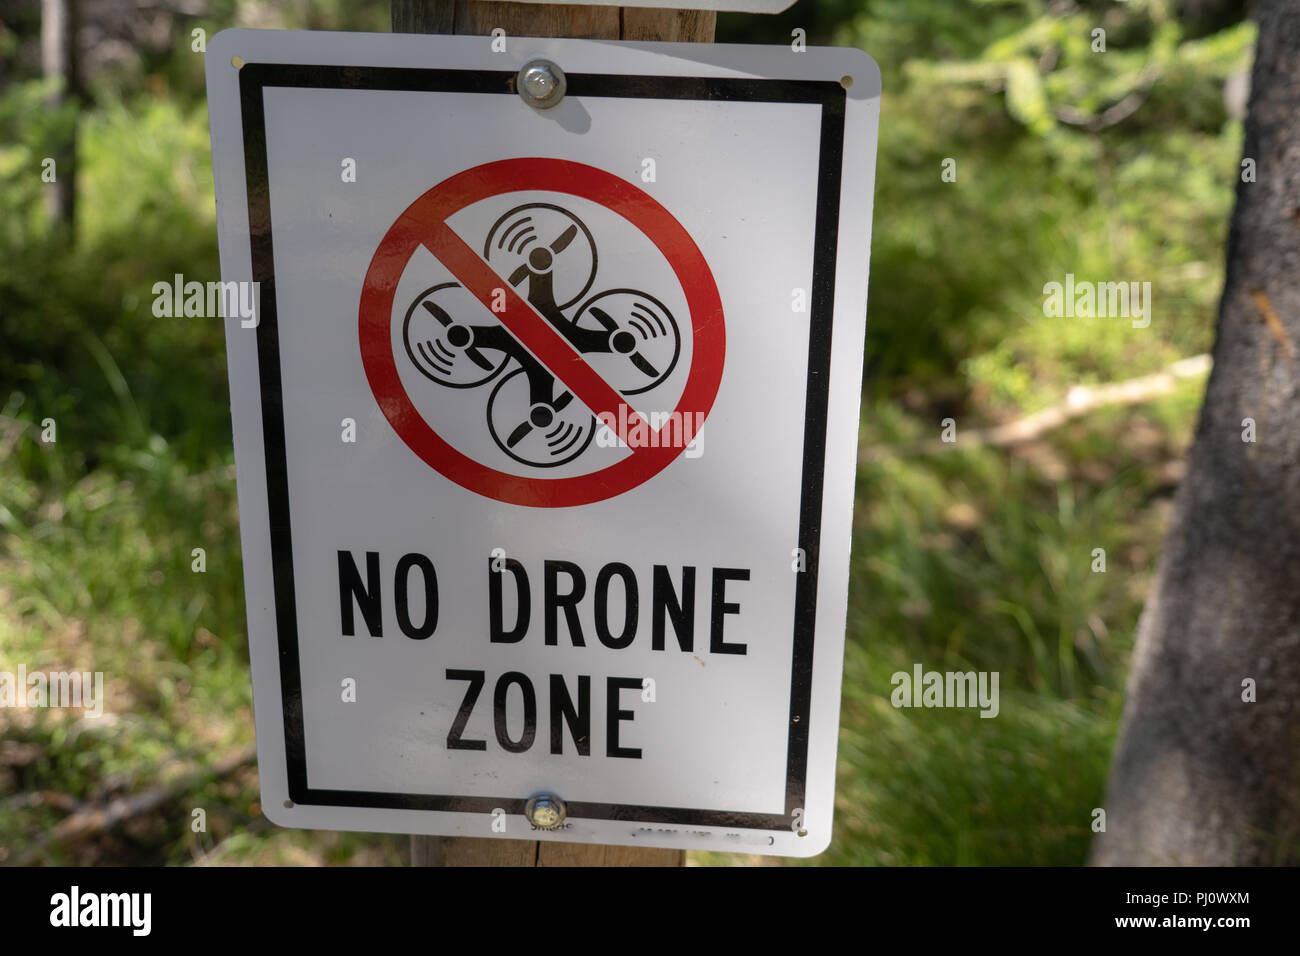 Kein drone zone restriktive Zeichen verhindert, dass Fliegen ein quadcopter Stockfoto